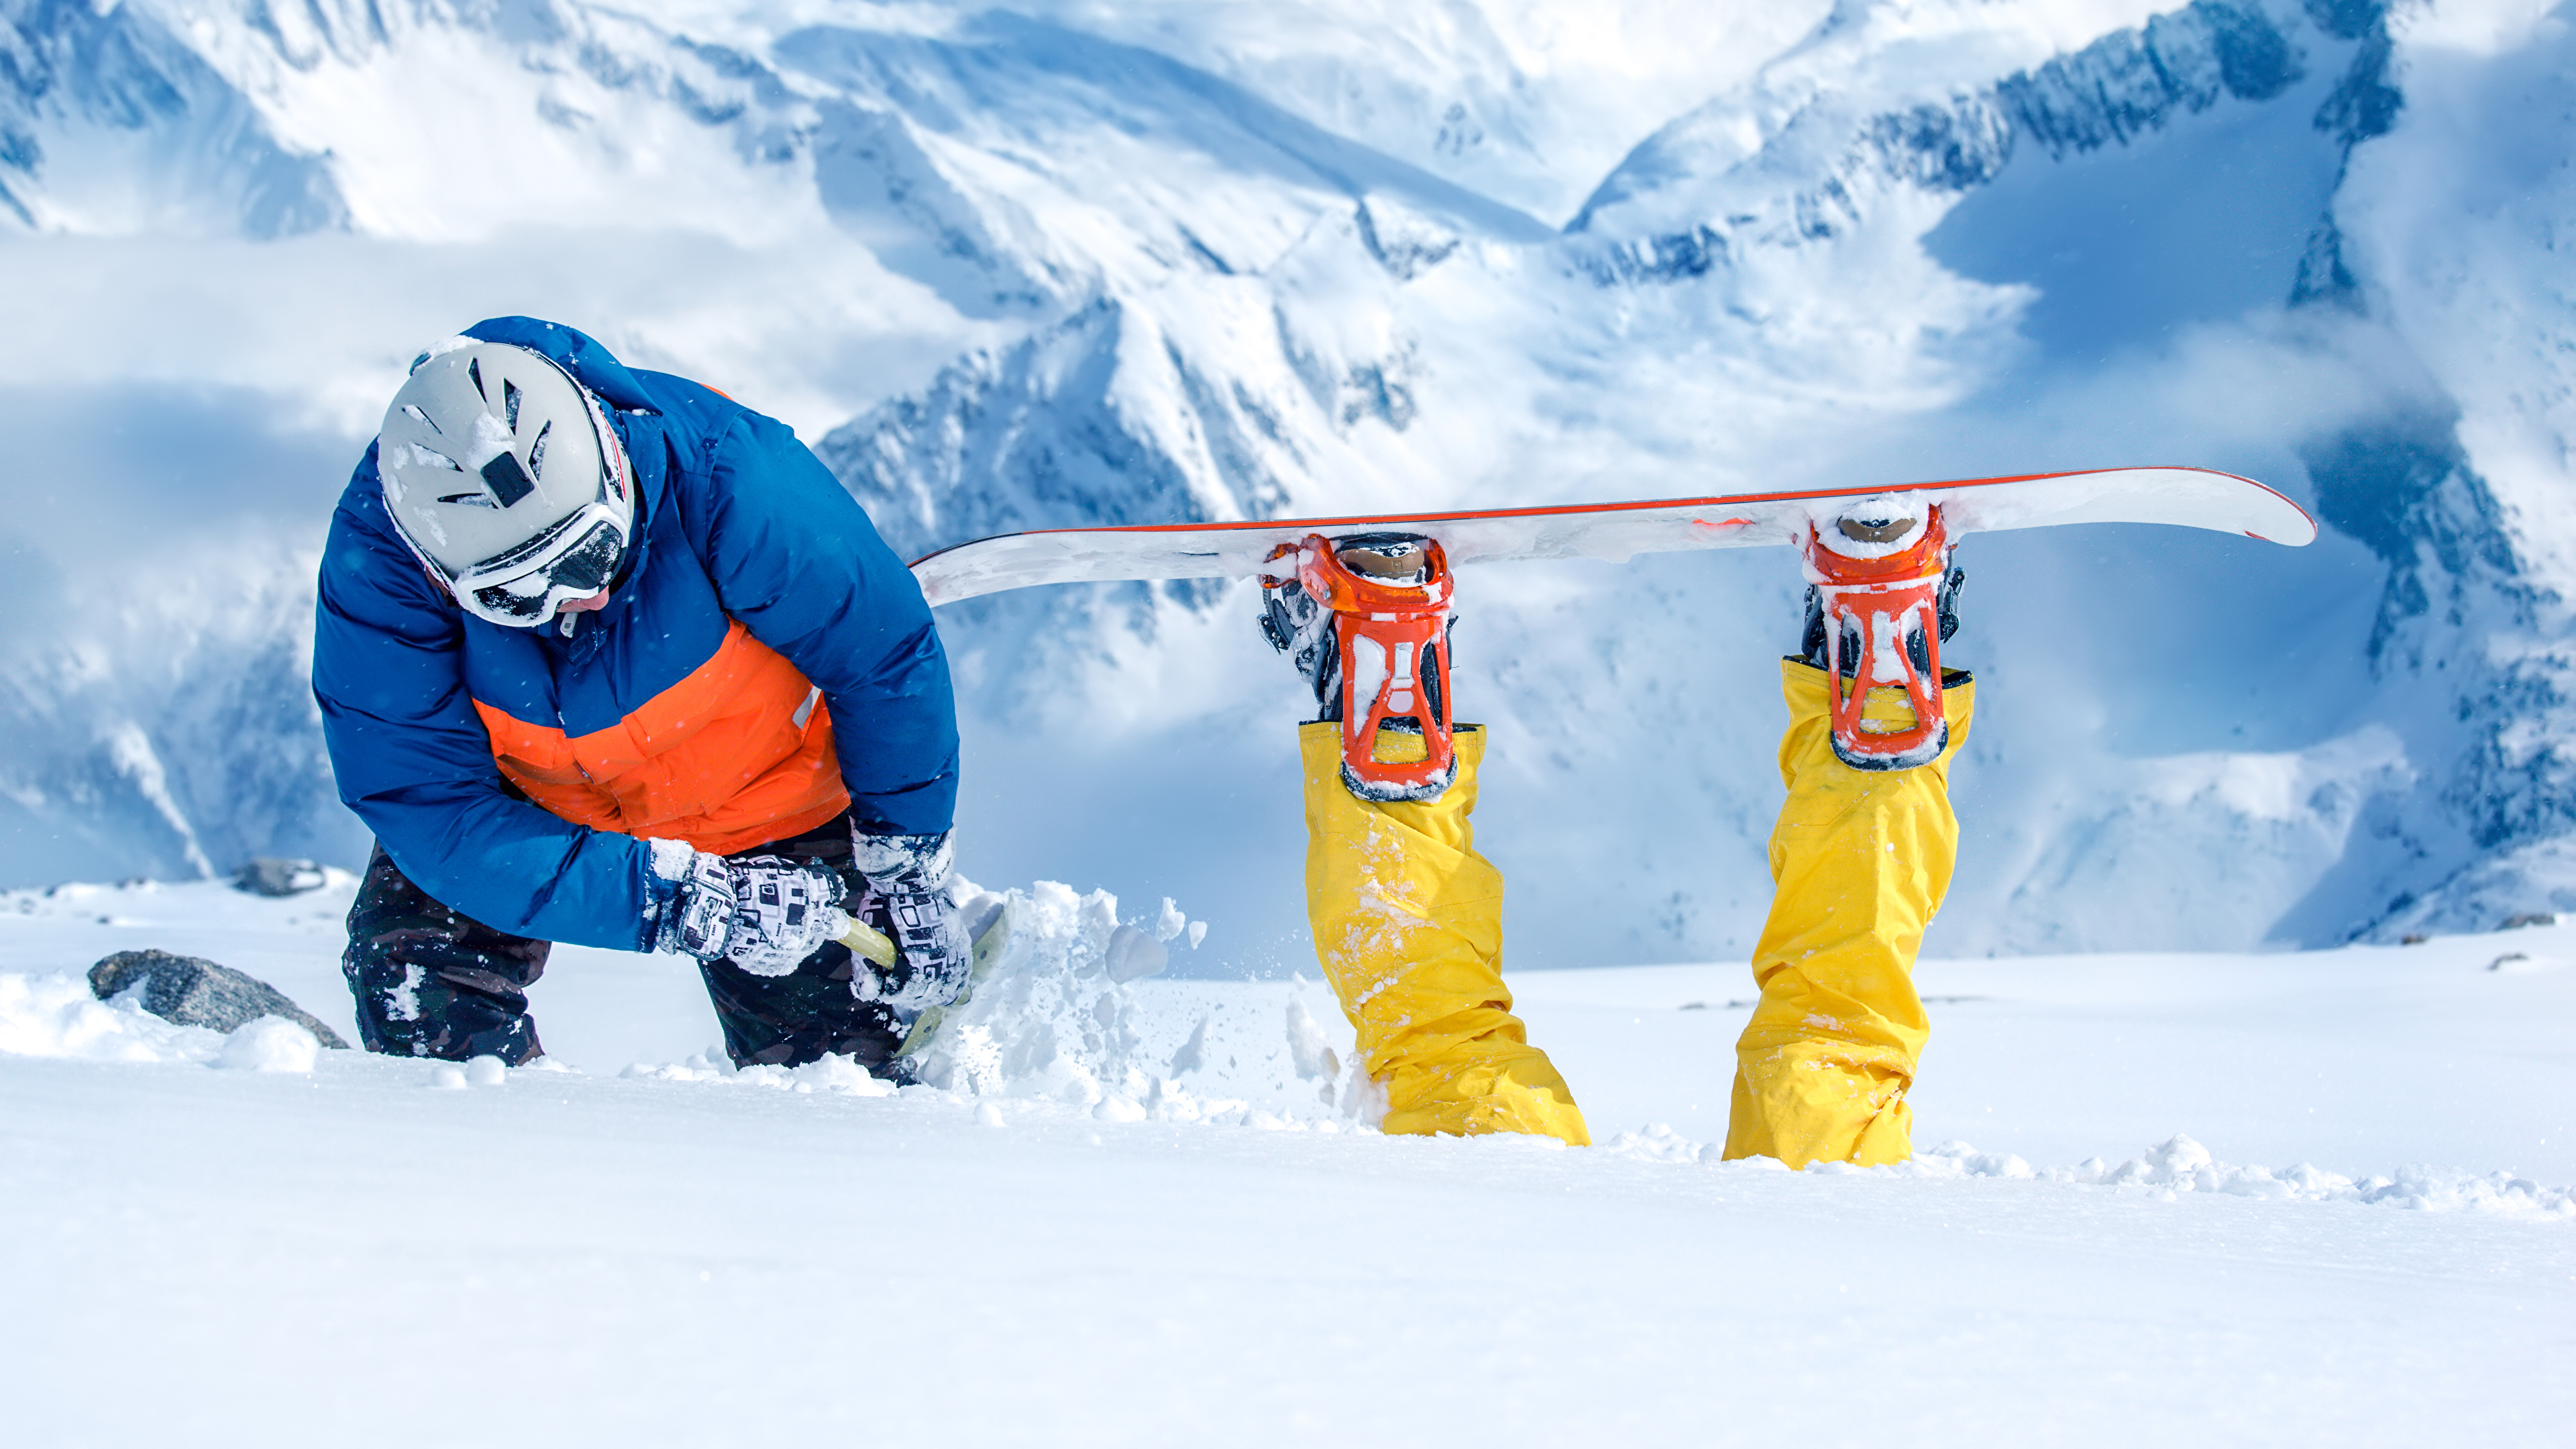 壁紙 3840x2160 冬 スノーボード 男性 雪 おもしろい スポーツ ダウンロード 写真